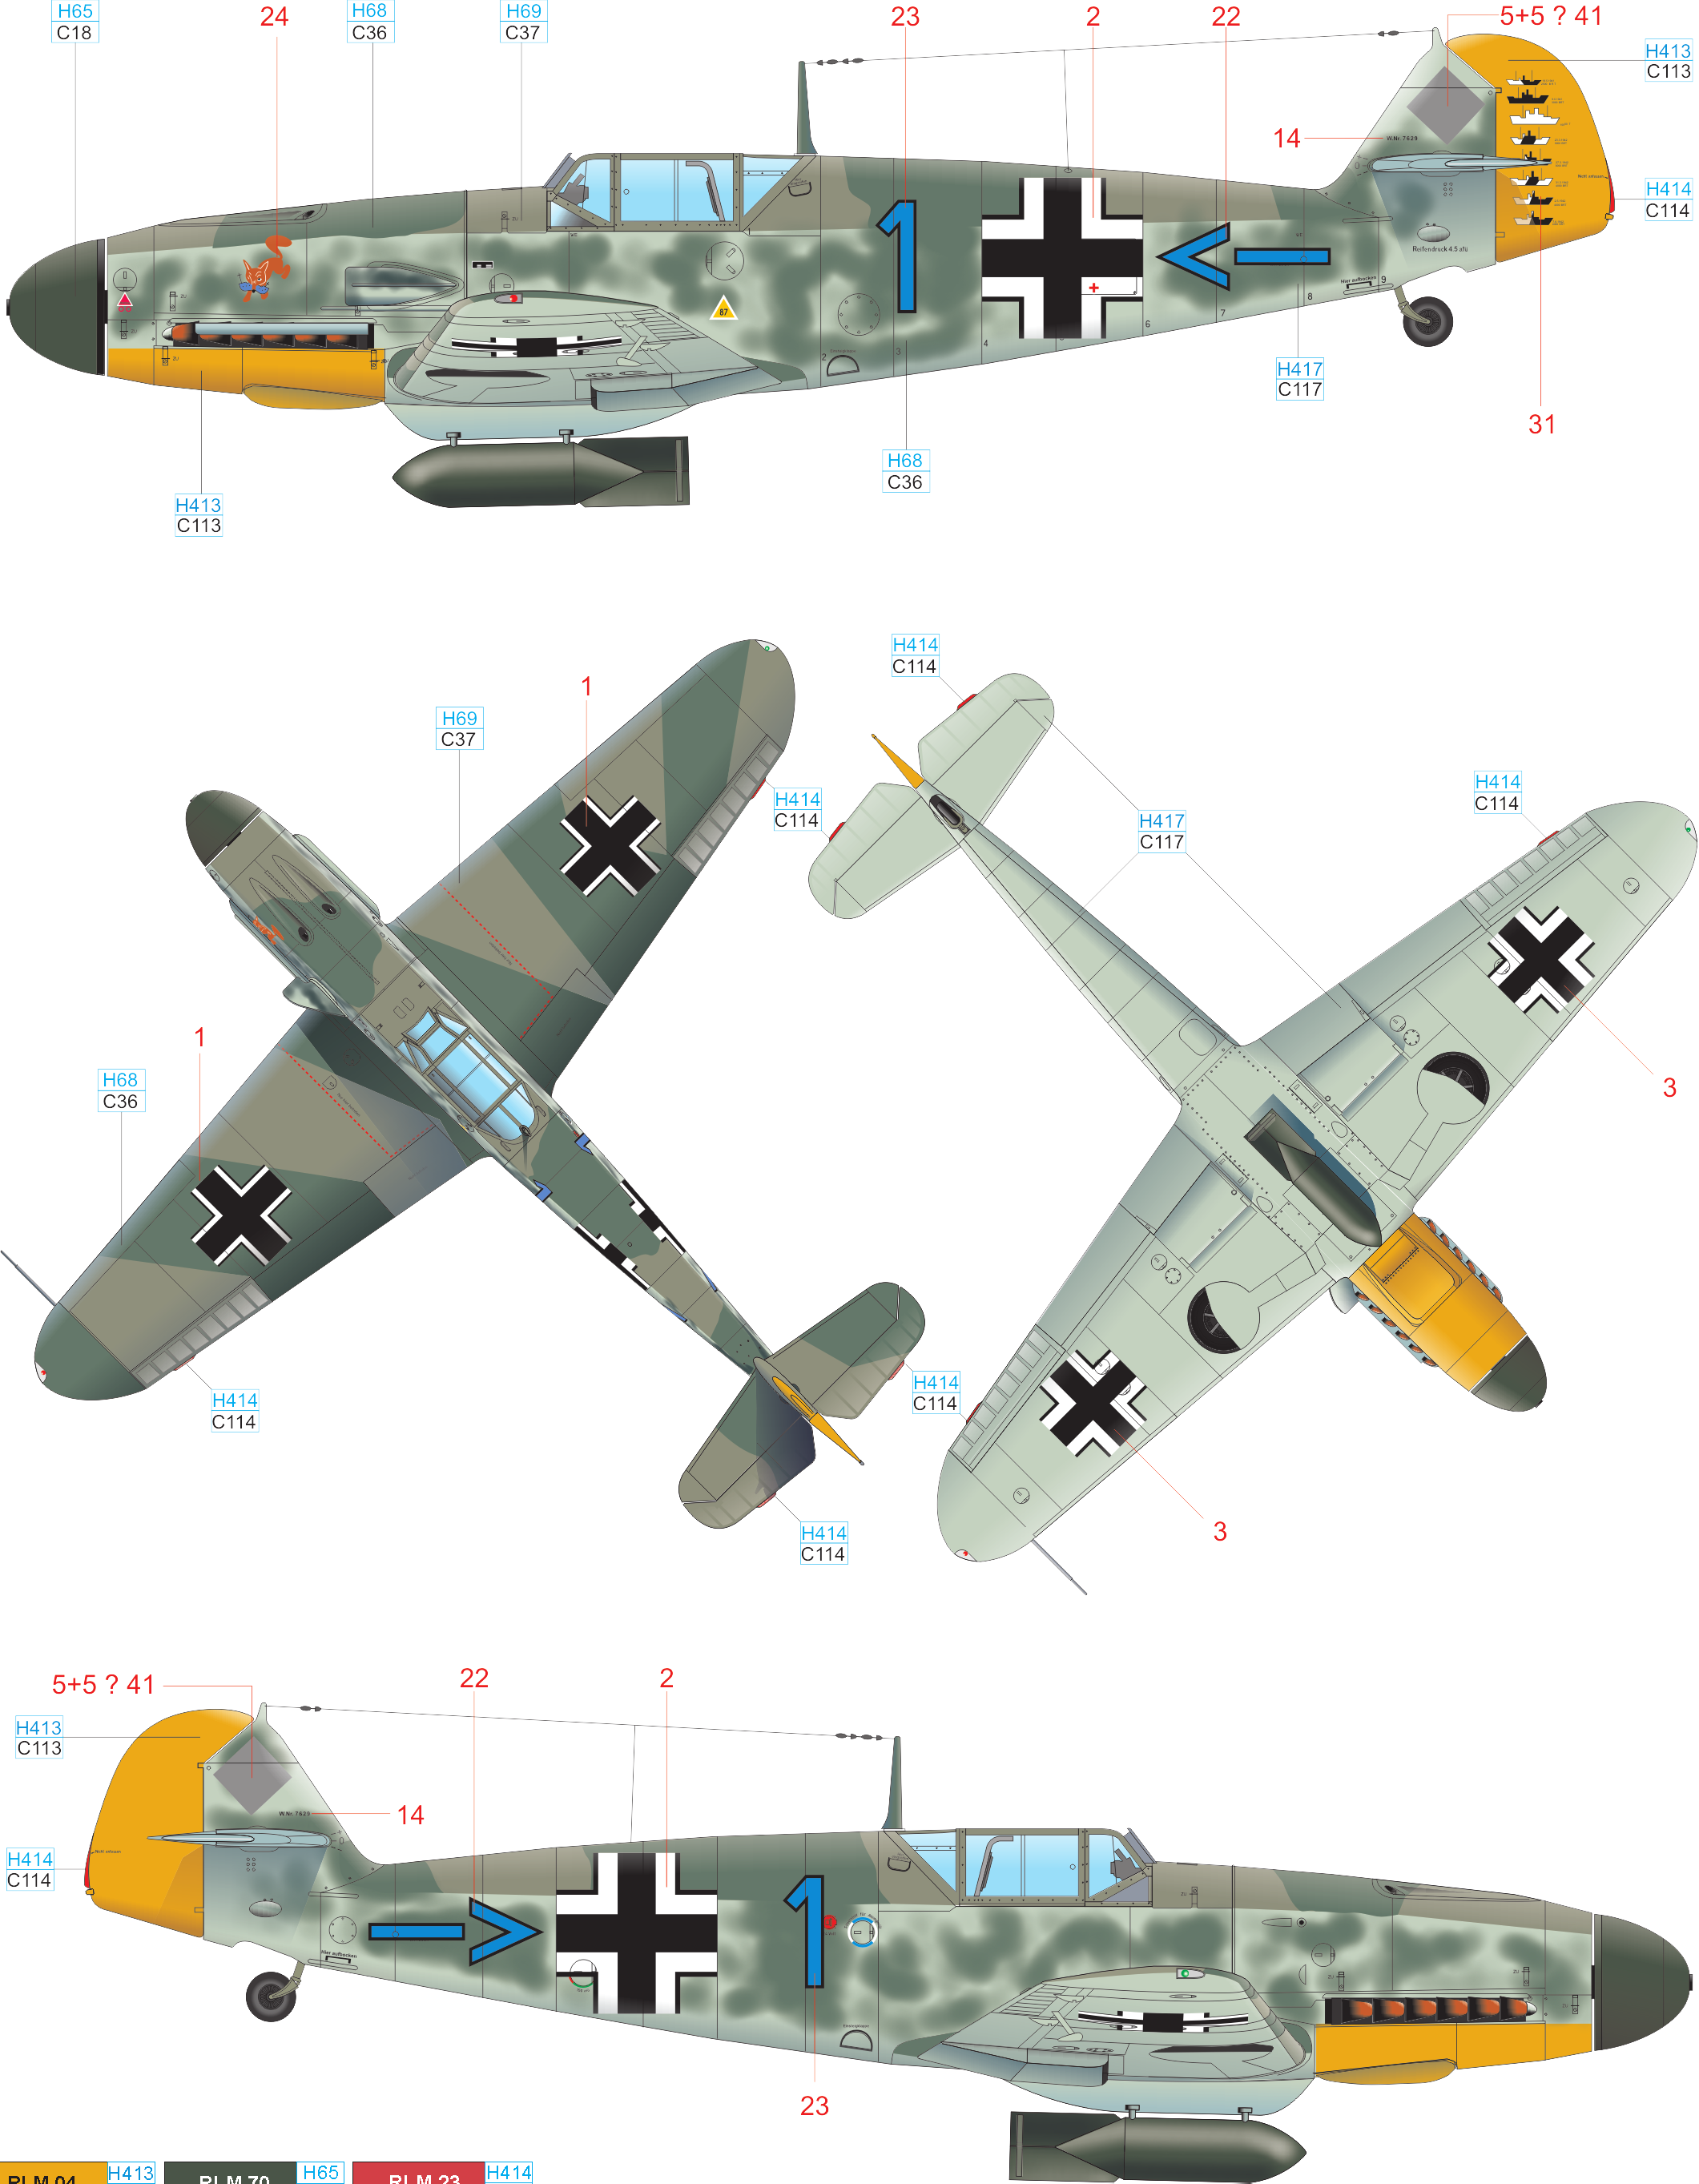 E Bf 109F-4/B, W. Nr. 7629, Oblt. Frank Liesendahl, 10. (Jabo)/JG 2, Francie, červen 1942 Koncem roku 1941 uvažovala Luftwaffe o obnovení bombardování Velké Británie a příbřežní lodní dopravy.